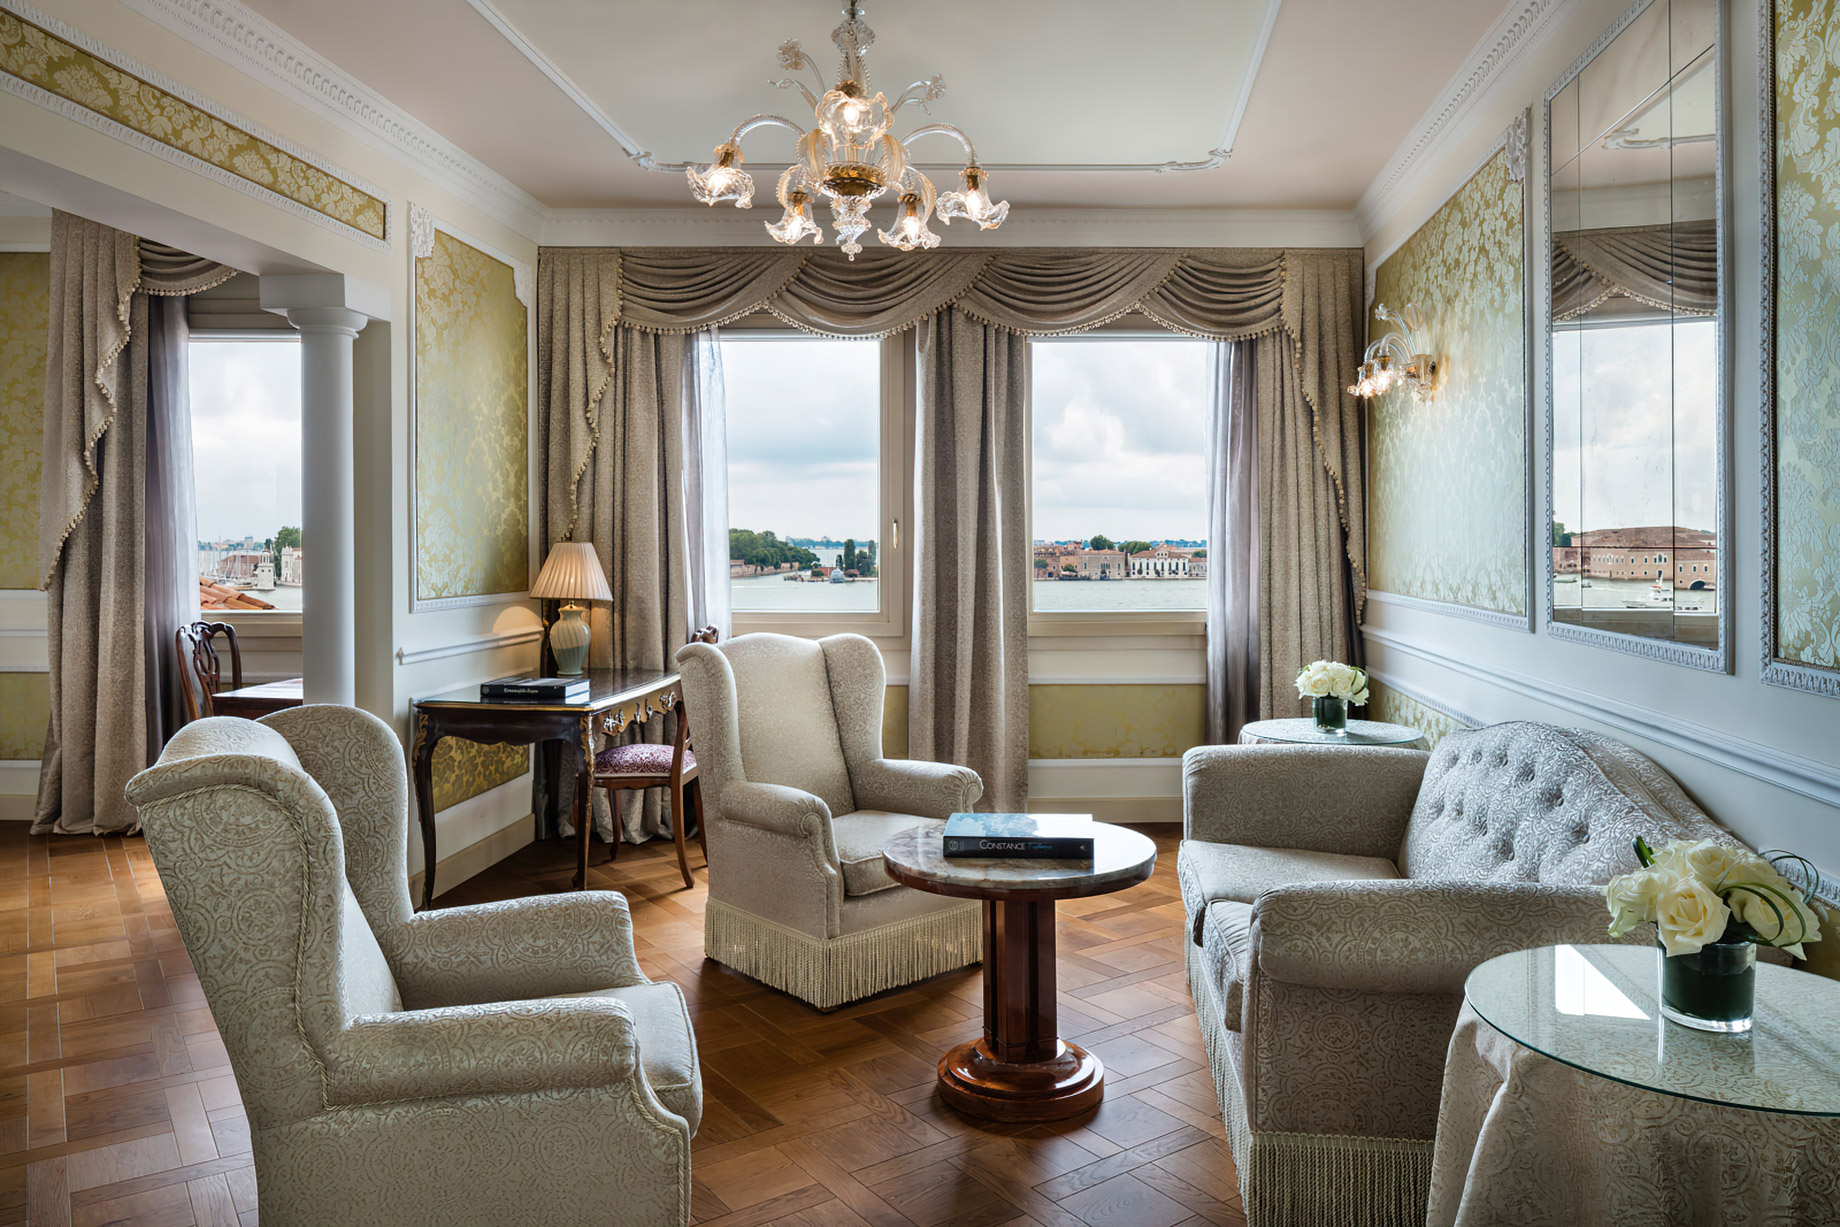 Baglioni Hotel Luna, Venezia – Venice, Italy – Tiziano Lagoon View Suite Interior